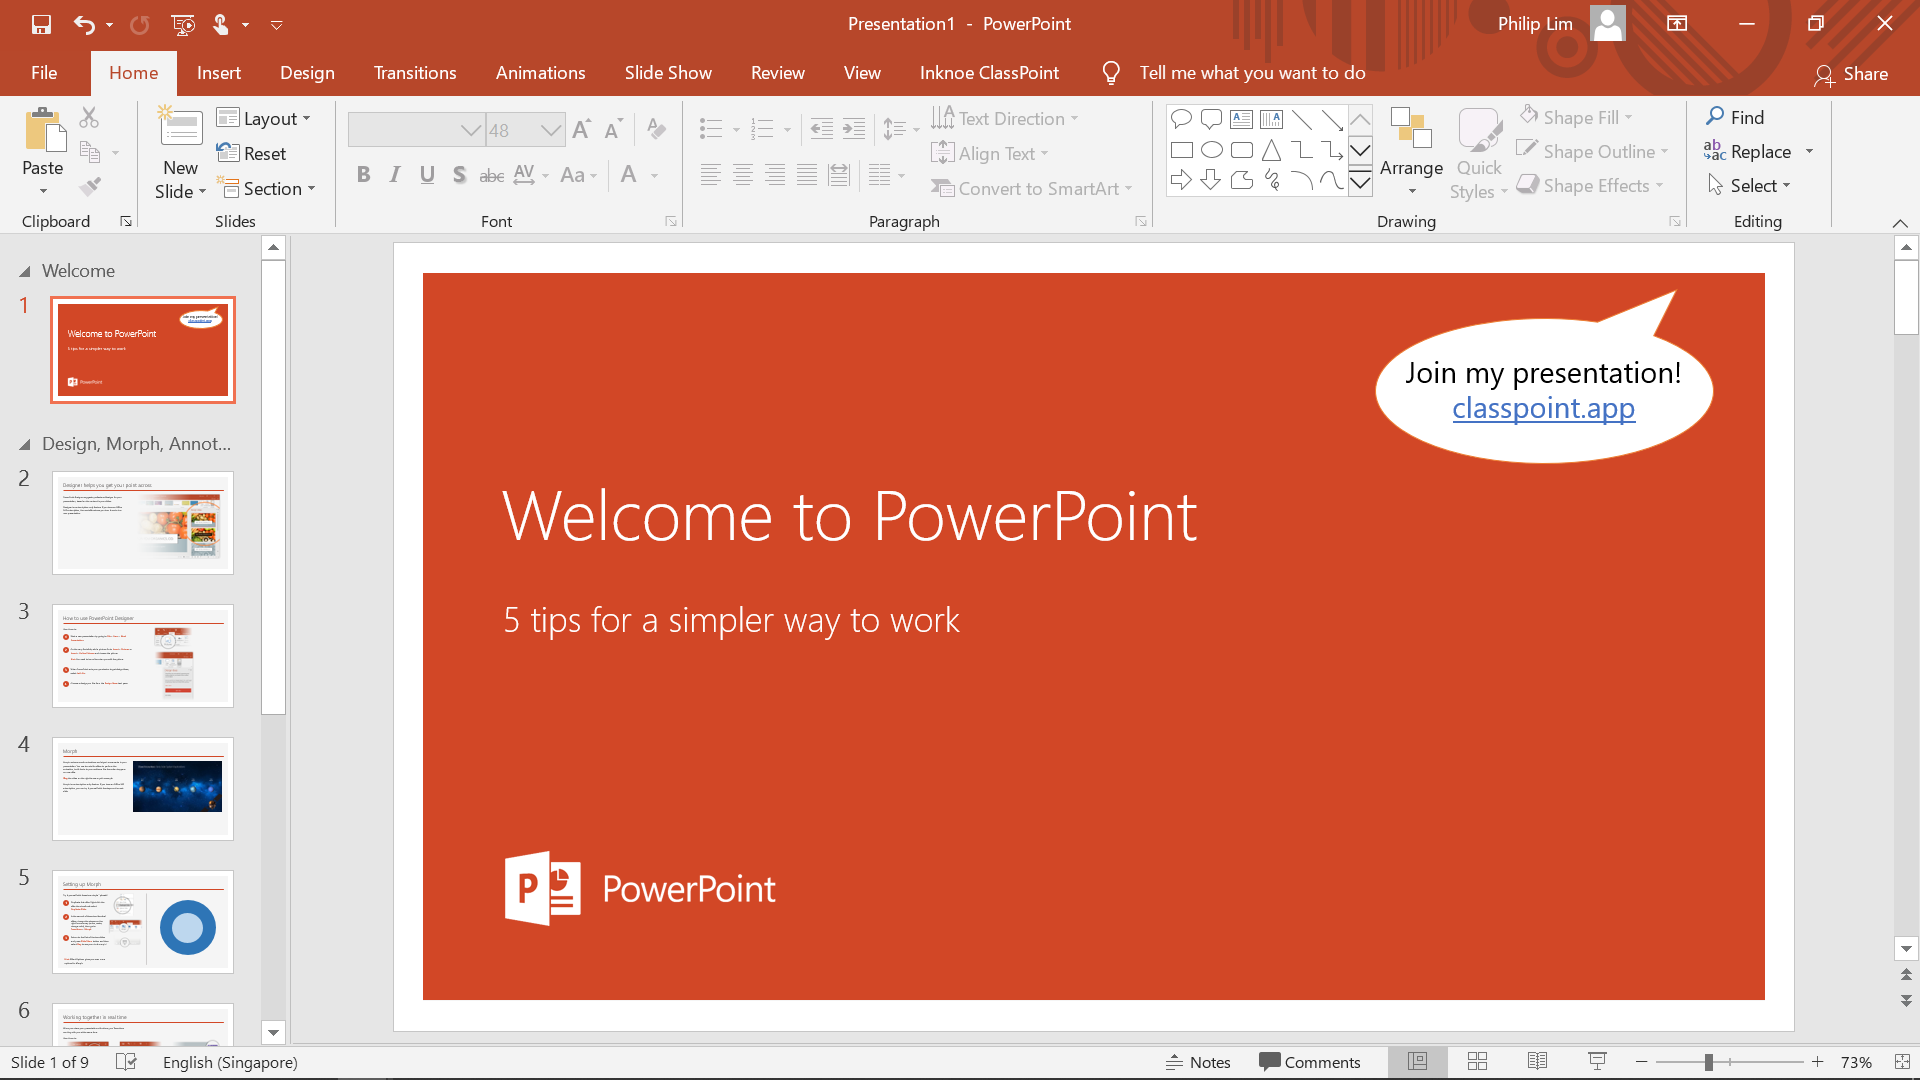 Tangkapan skrin PowerPoint dengan petua alat ClassPoint untuk menyertai kelas dengan lebih pantas